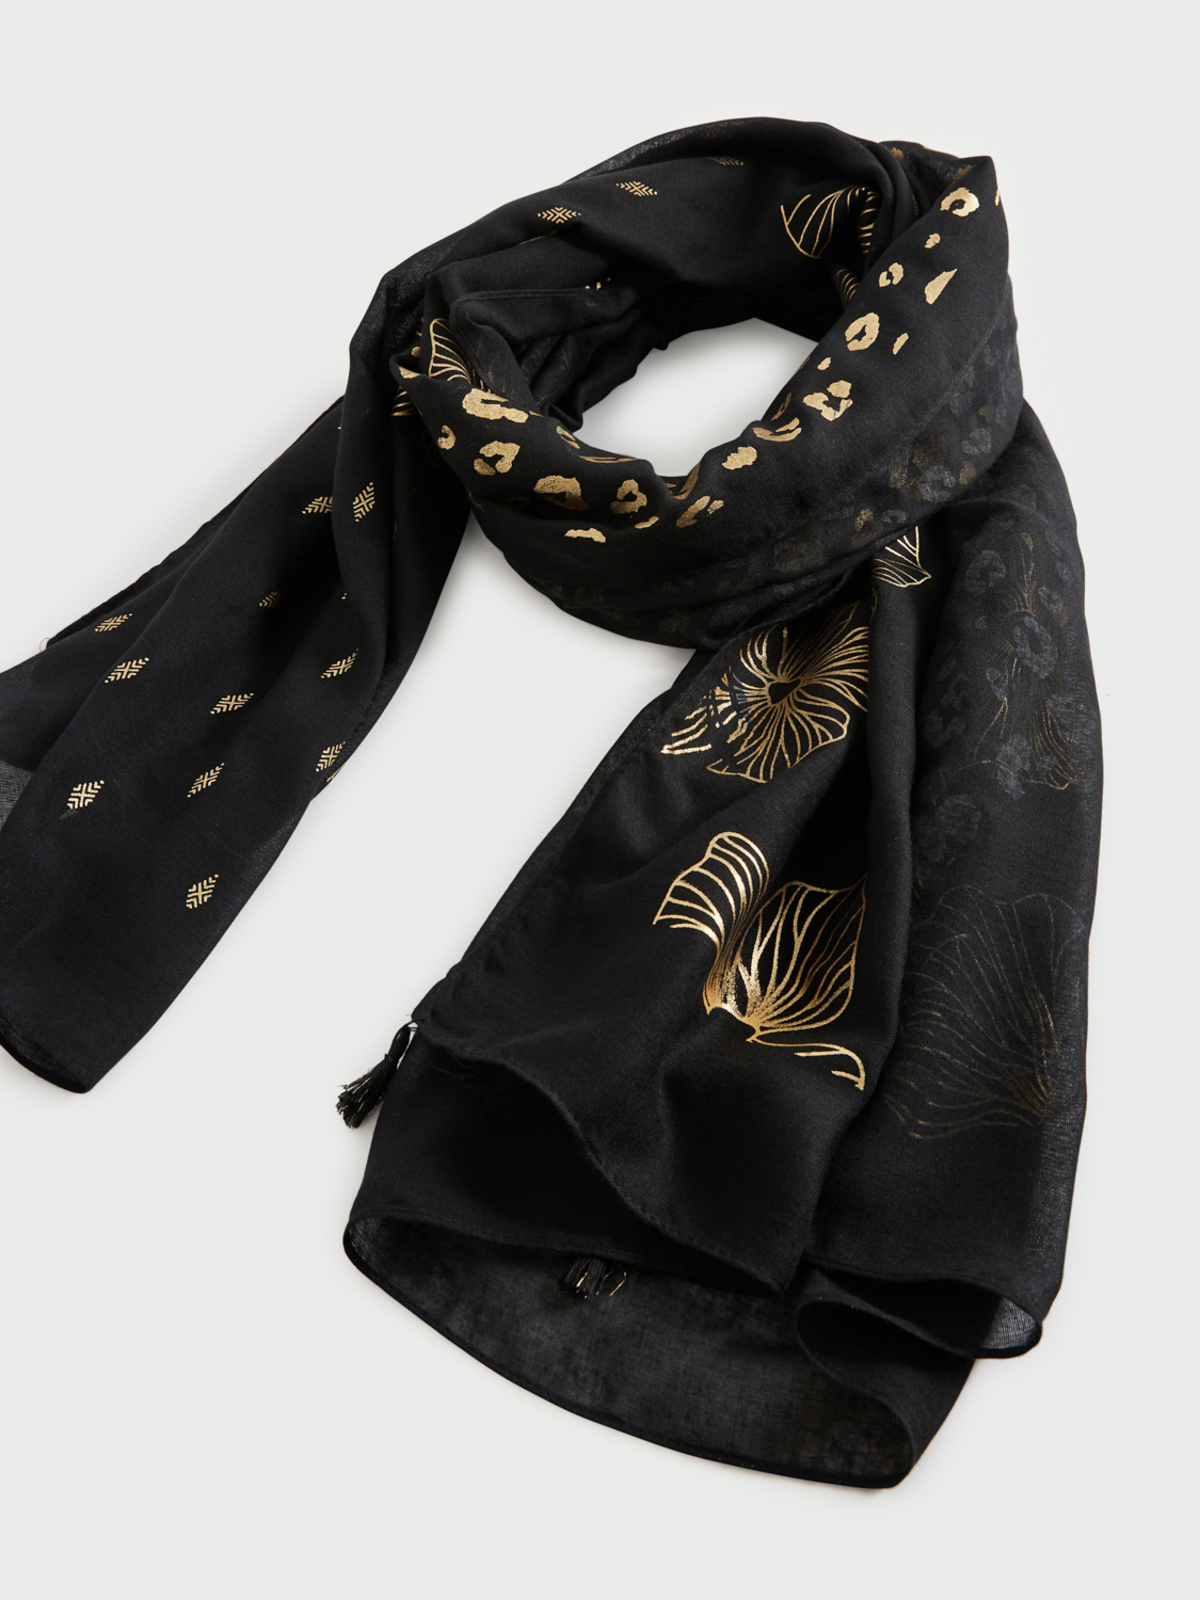 Écharpe noire et blanche écharpe gothique écharpe en soie plumes foulards  peints à la main foulards noirs ornement art nouveau paon noir -  France